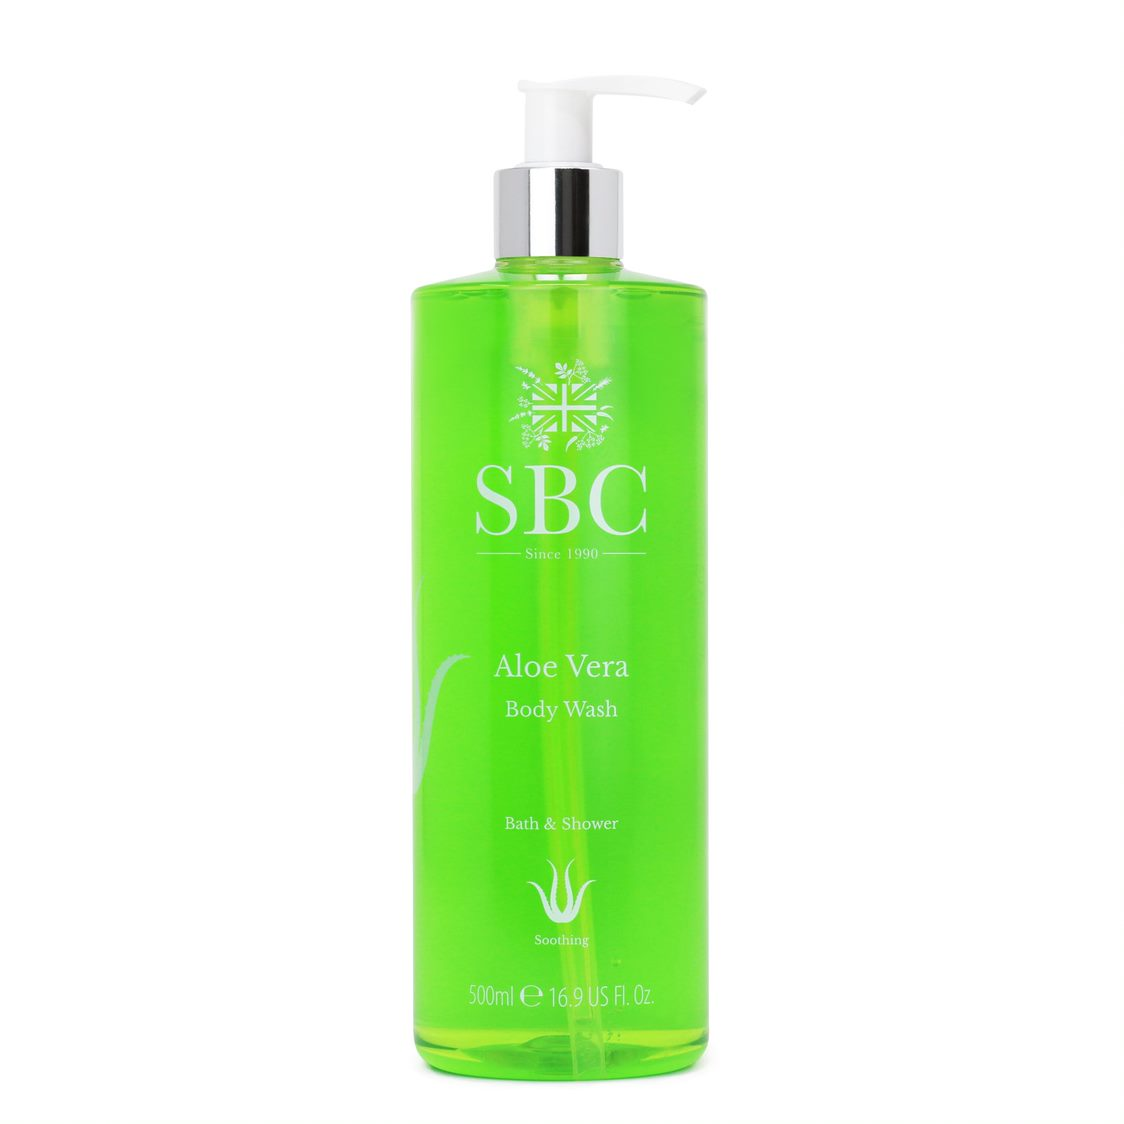 SBC Aloe Vera Body Wash